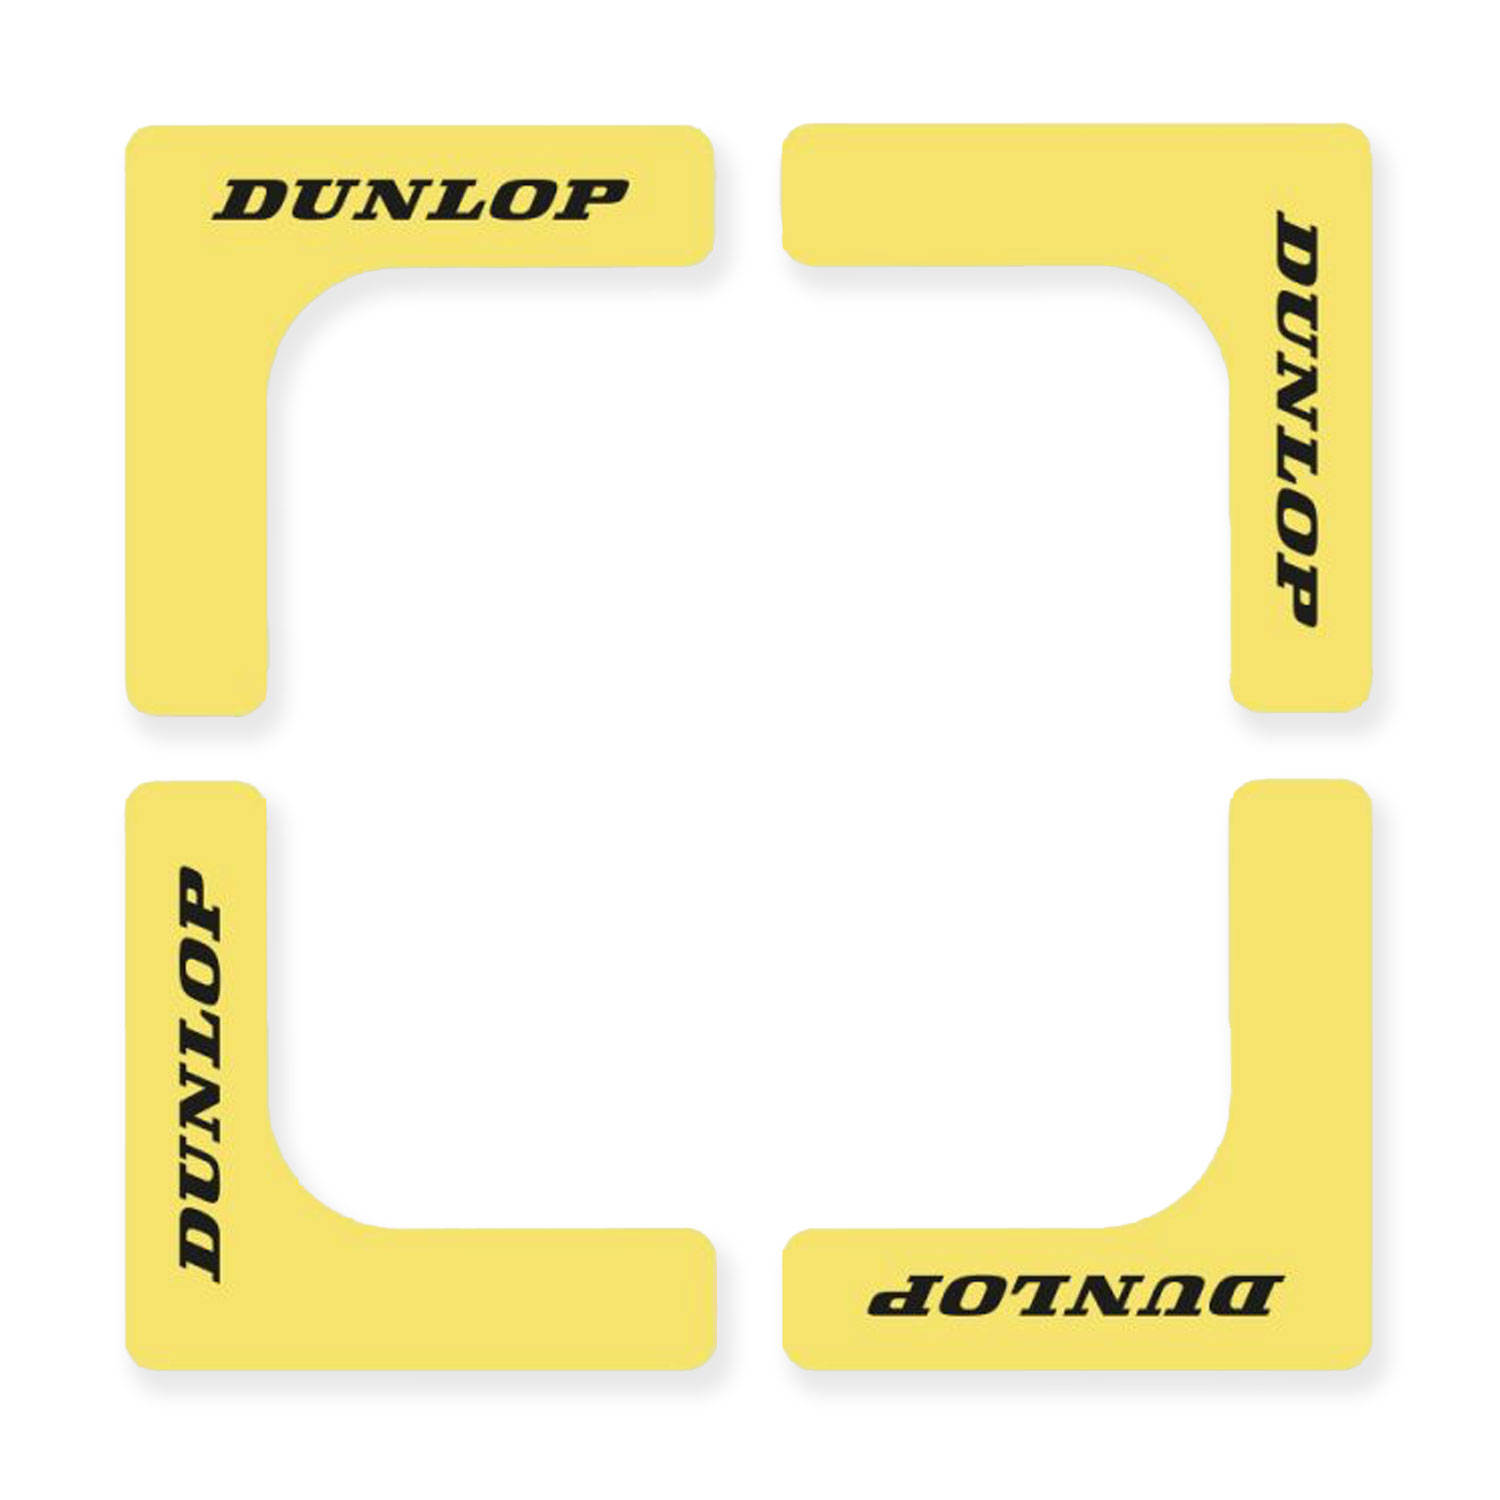 Dunlop Court Angoli - Yellow